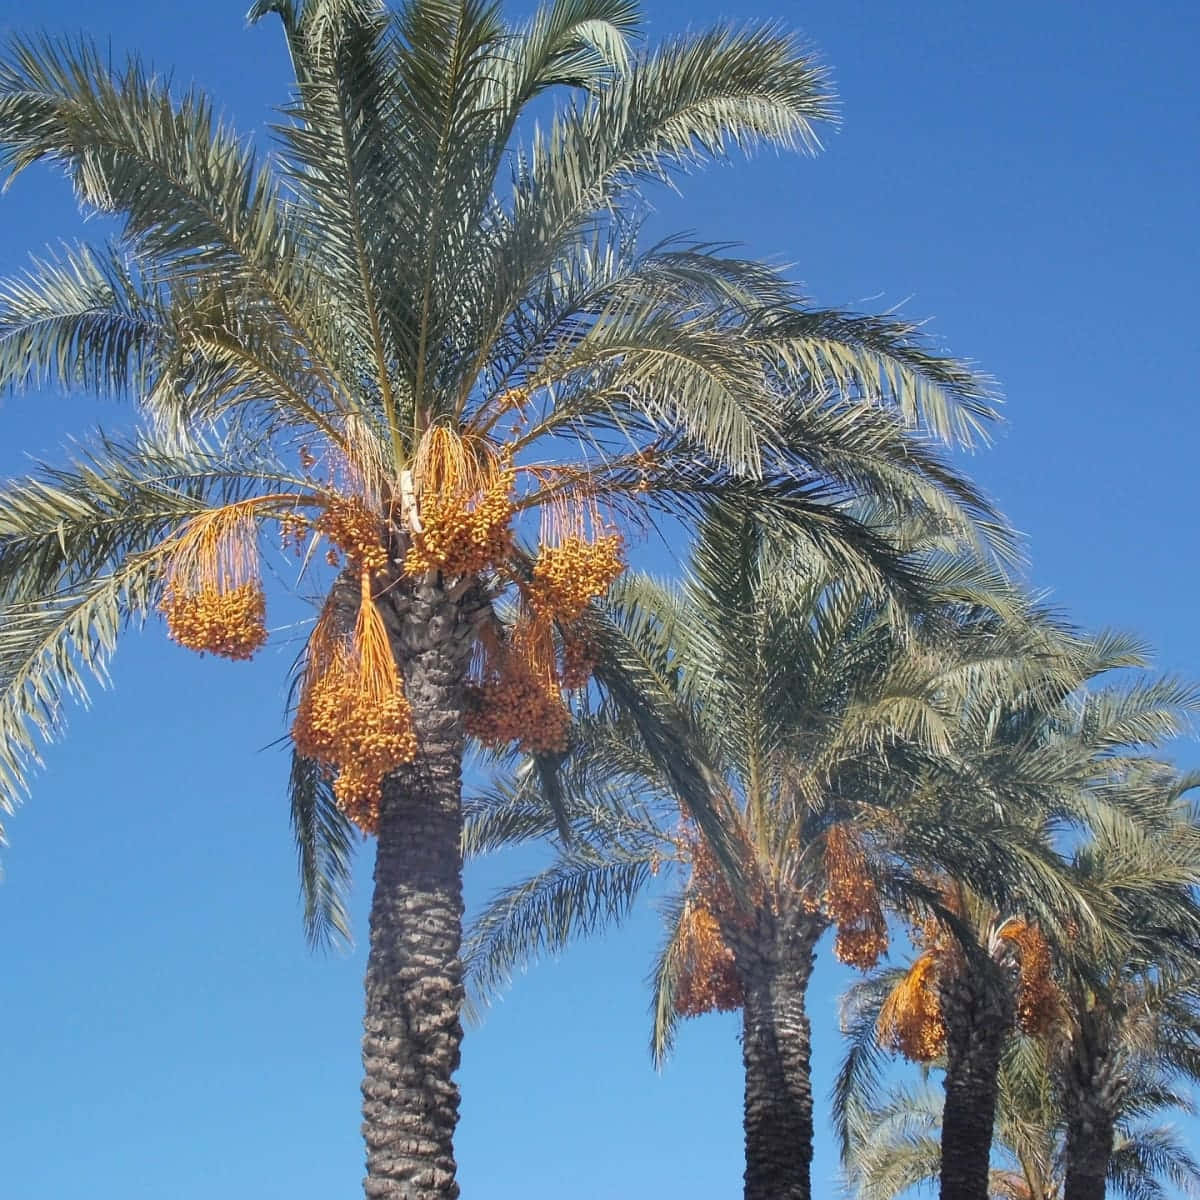 En tropisk paradis venter på denne idylliske strand, med et smukt palme træ silhuet mod en levende solnedgang.